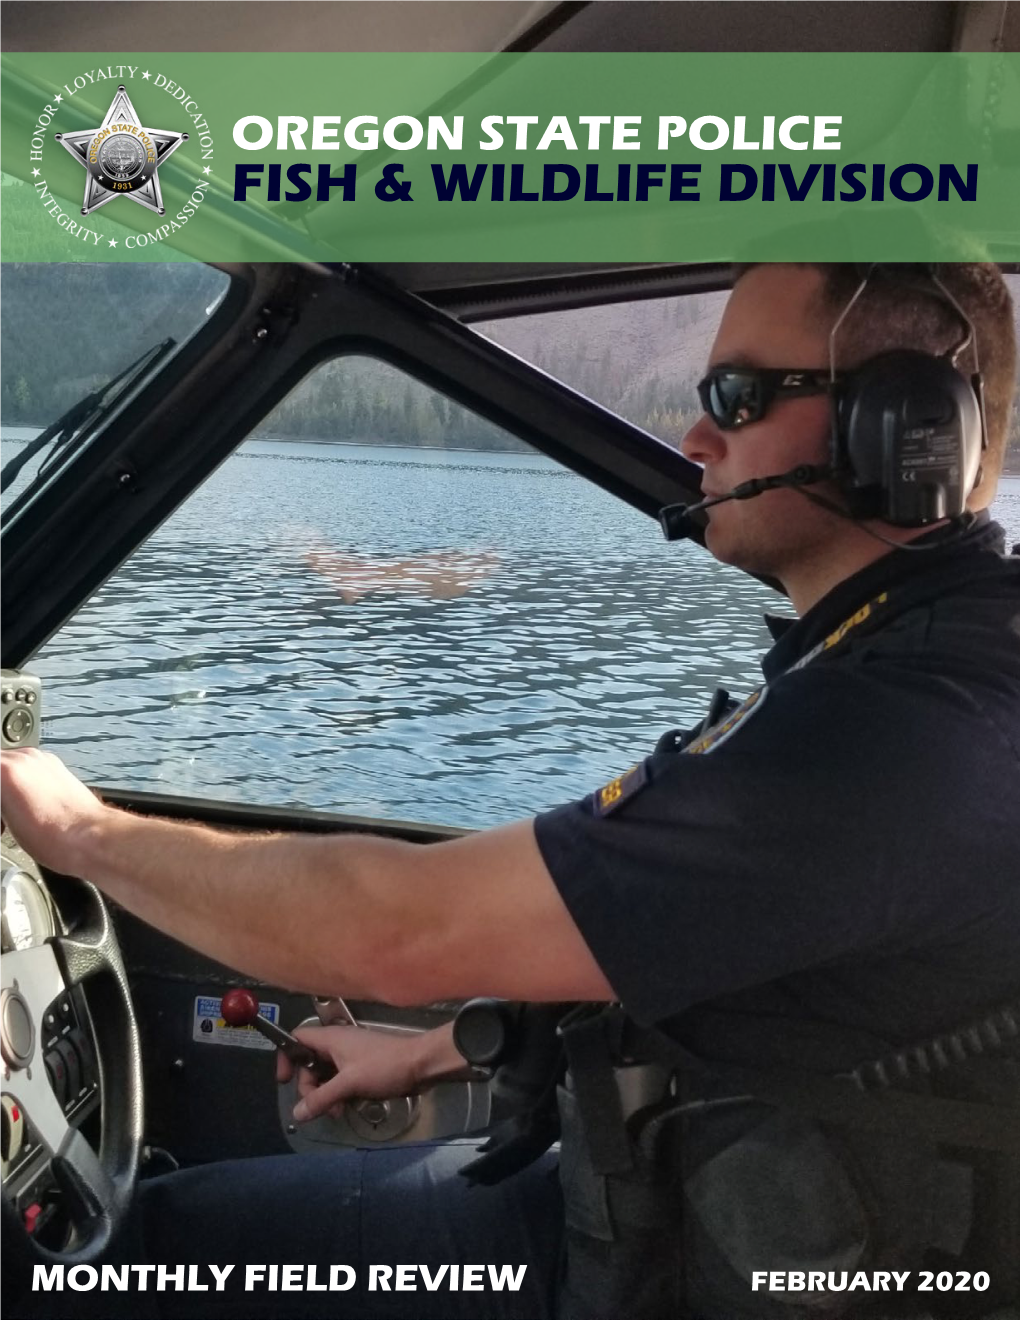 Fish & Wildlife Division